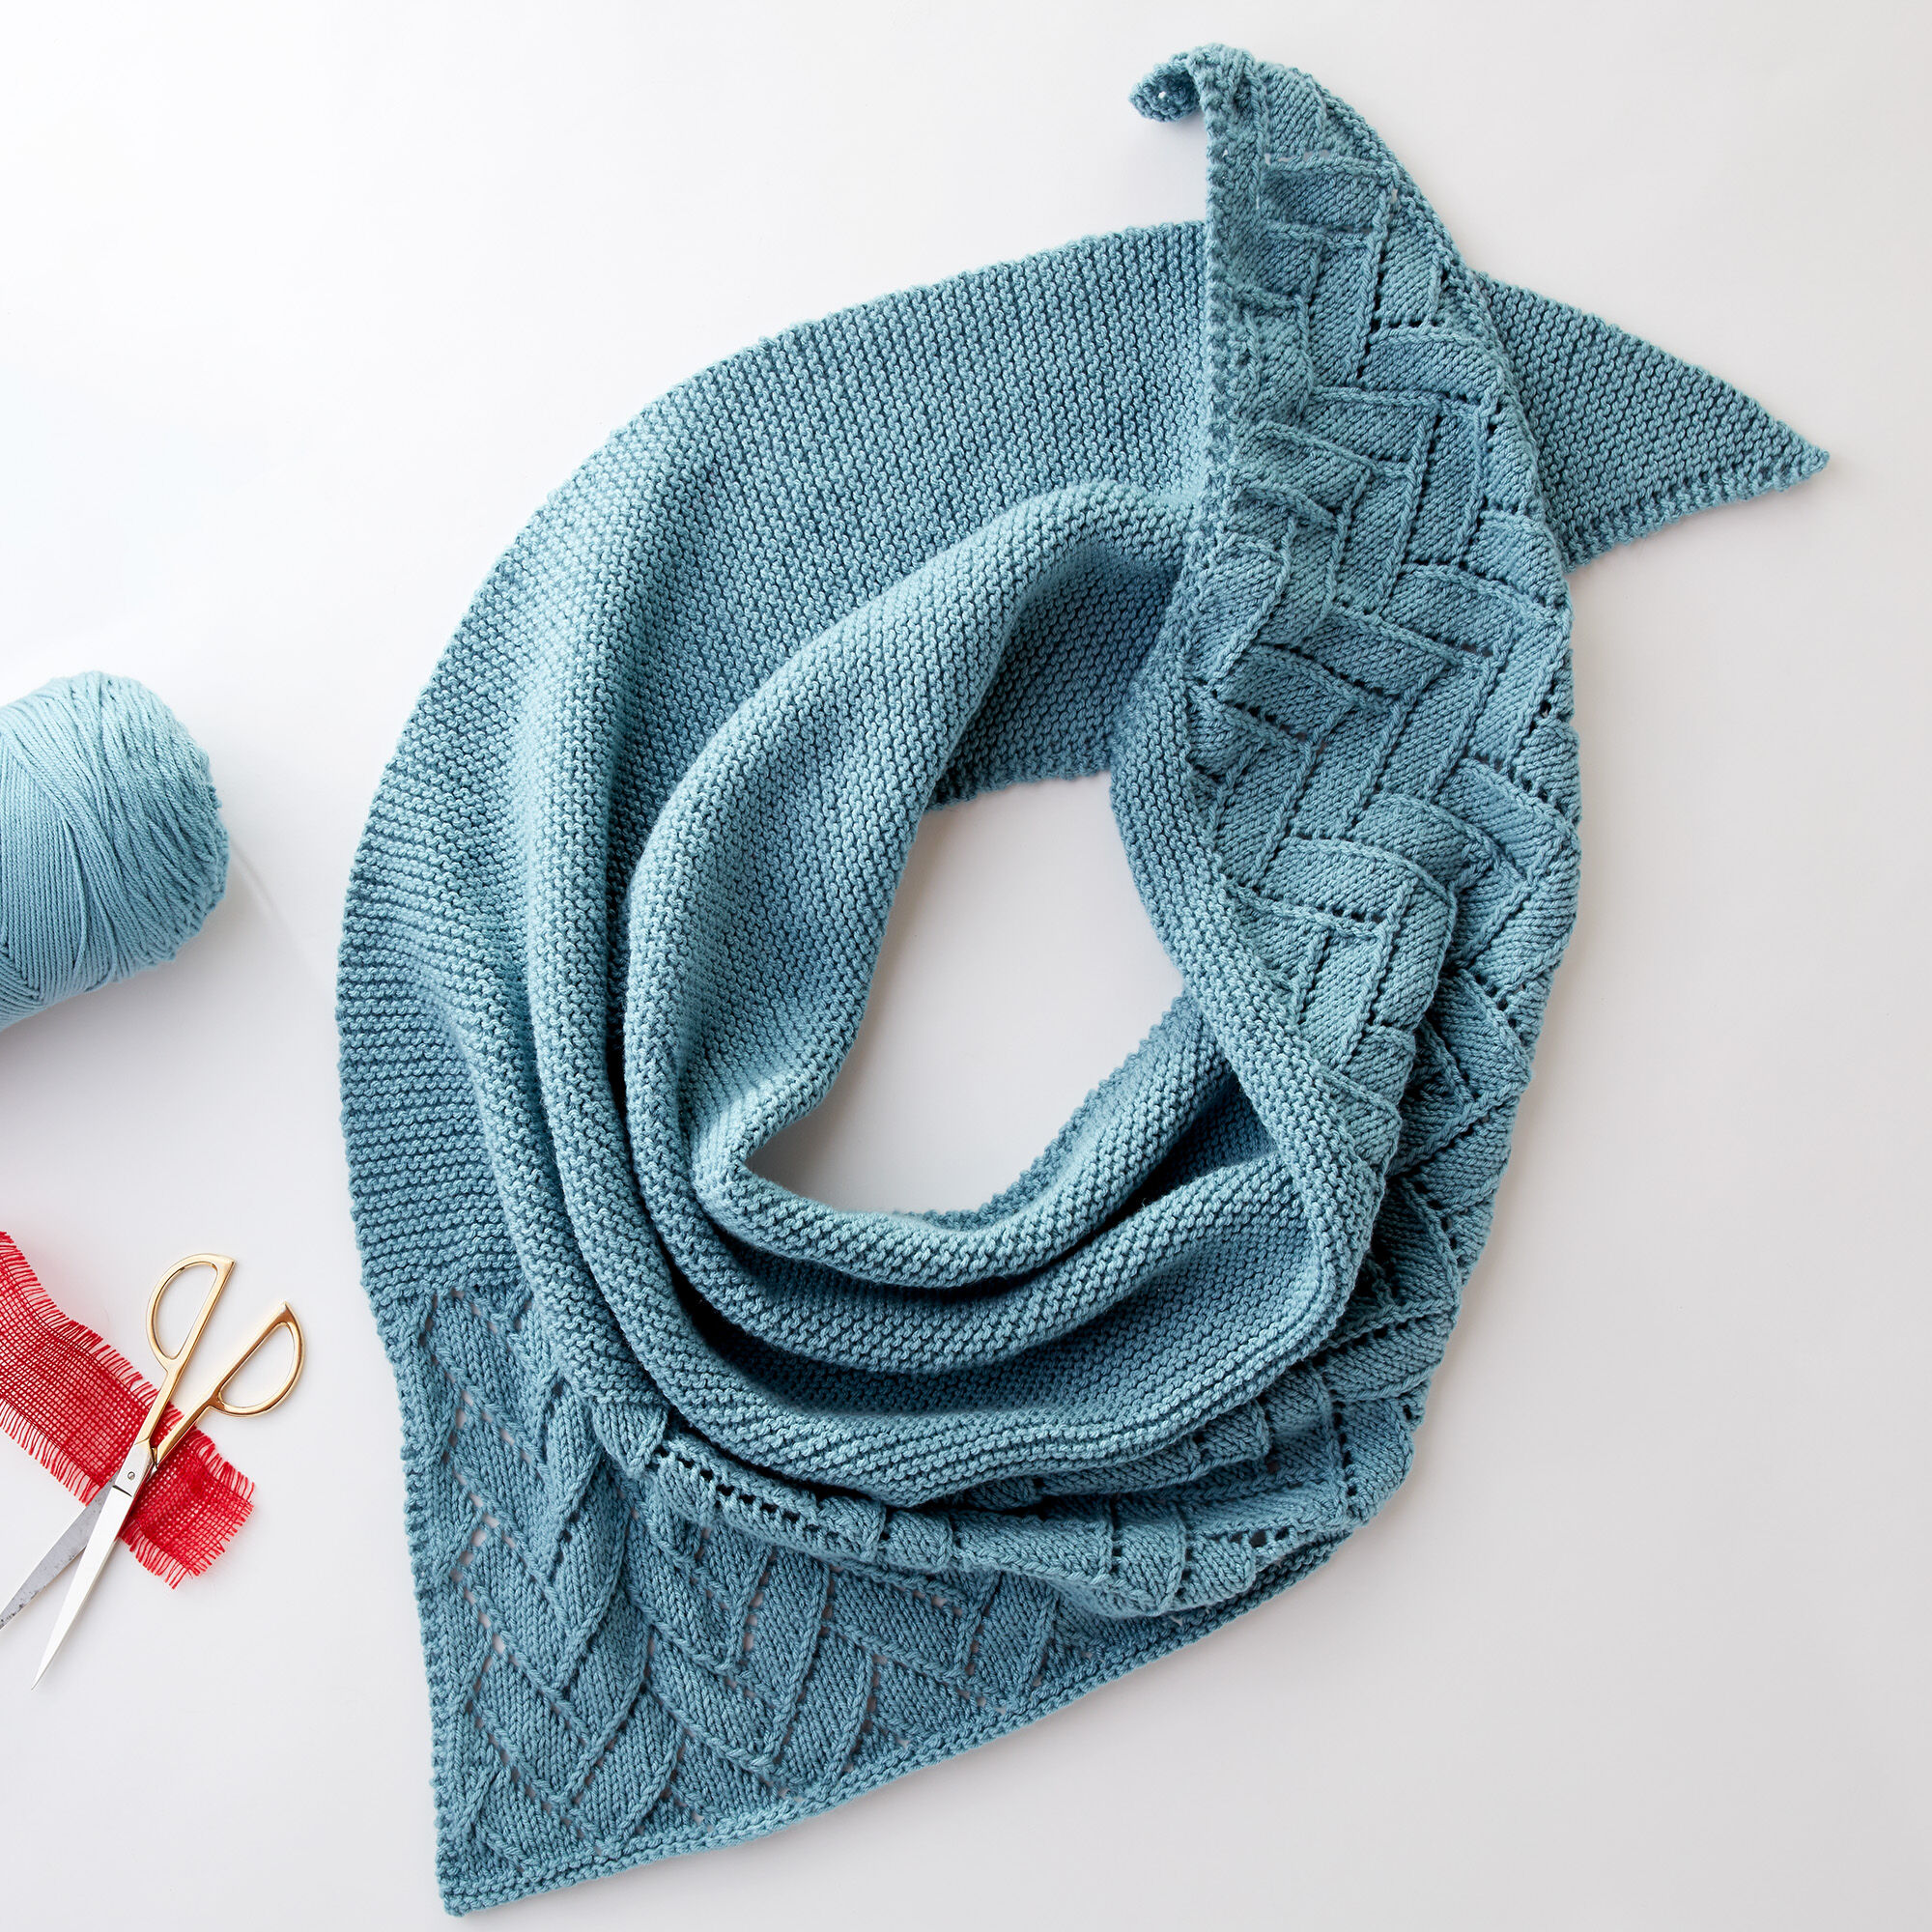 Knitting Patterns Galore - Asymmetrical Lace Shawl